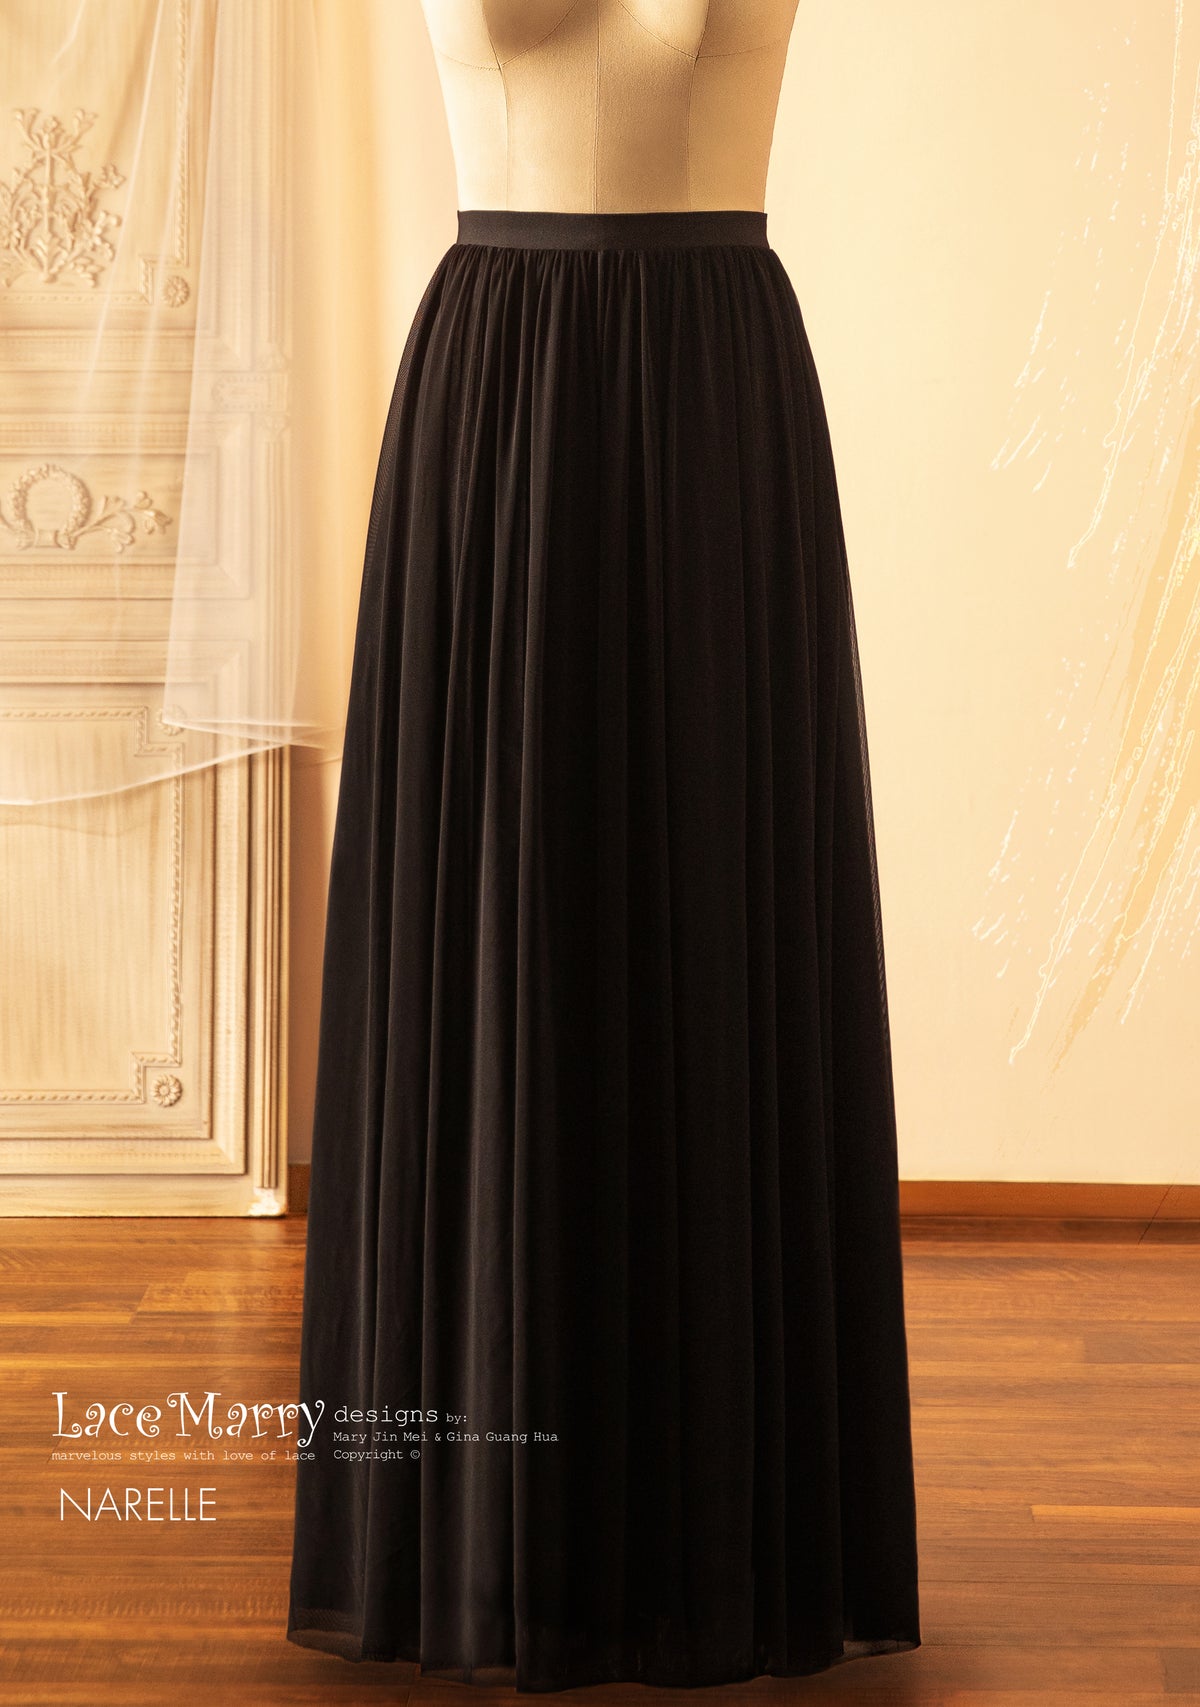 NARELLE / Black Tulle Skirt in Floor Length